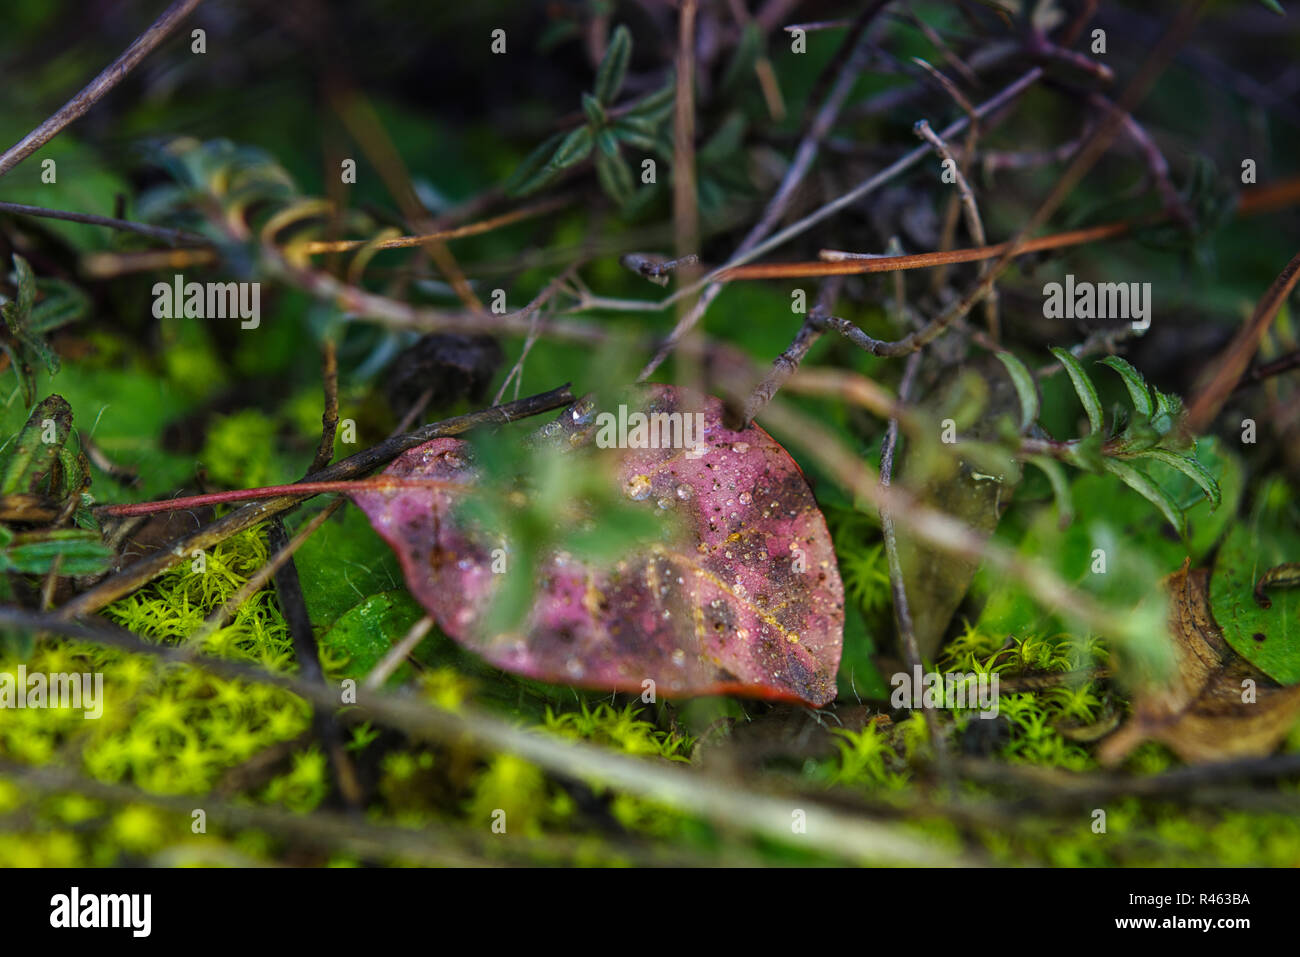 Macro Immagine del muschio verde sul suolo della foresta Foto Stock